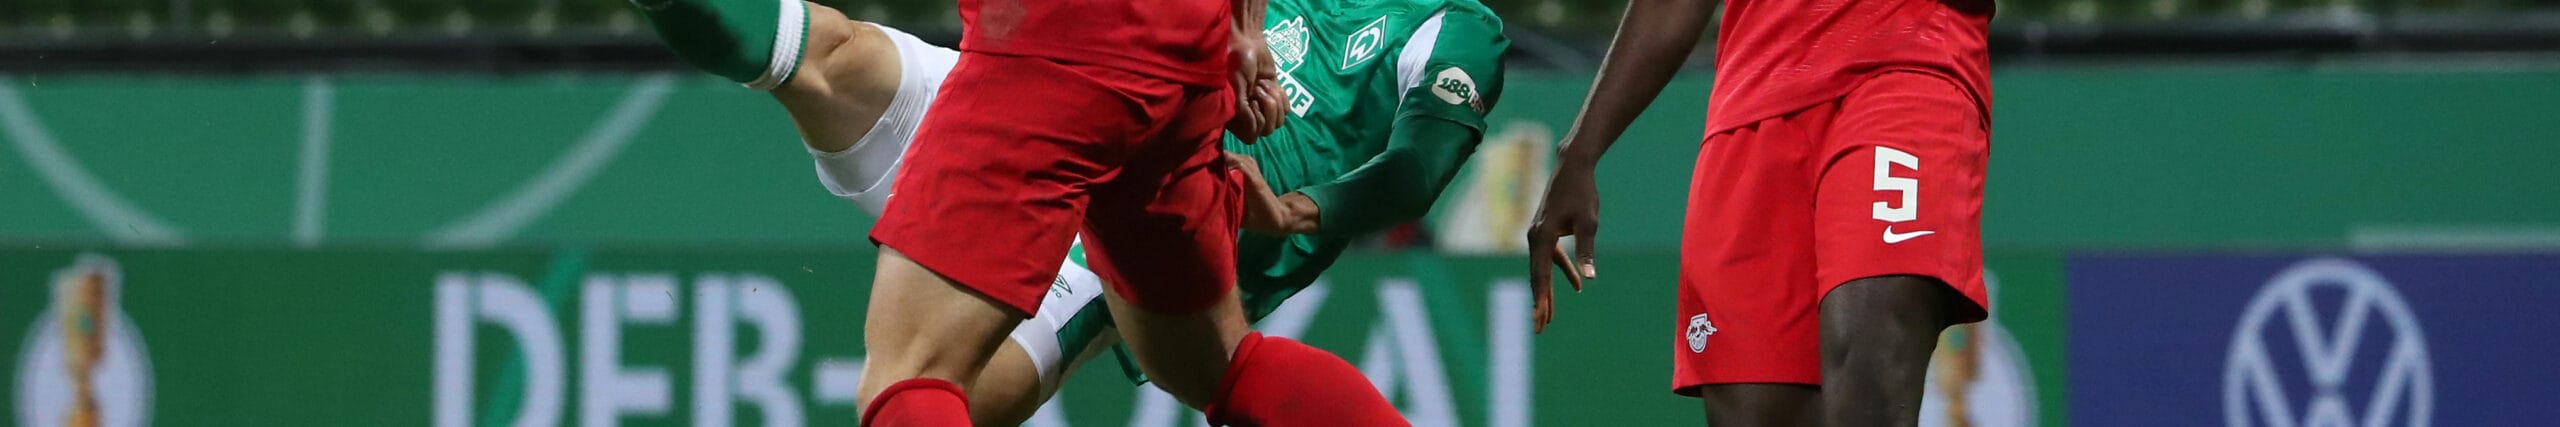 Werder Bremen - RB Leipzig: Bullen lassen gegen Aufsteiger nichts anbrennen